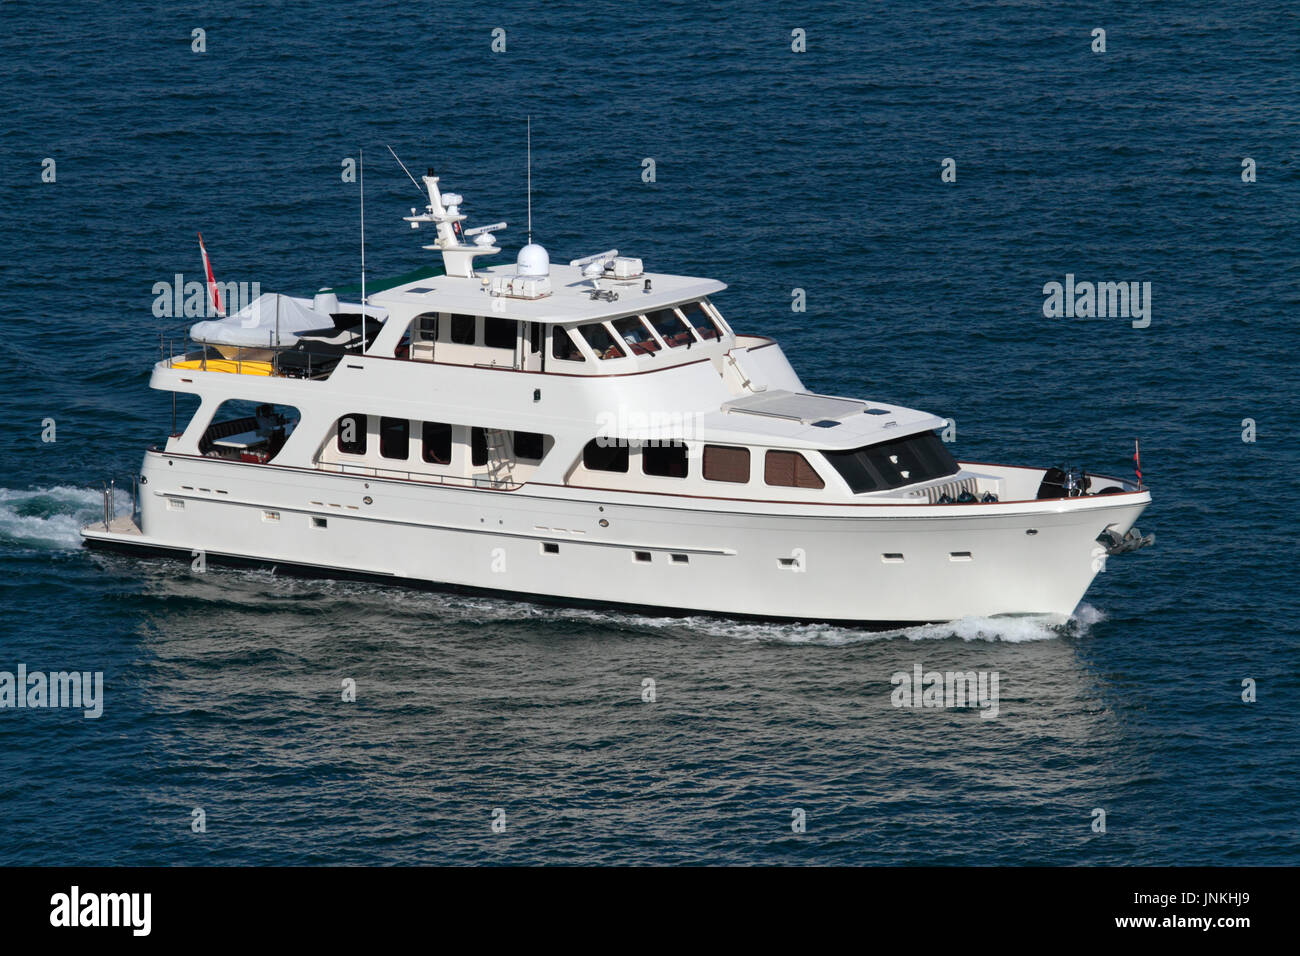 Luxury travel. The Offshore Yachts large motor yacht (24.5 metres) Sundene cruising at sea Stock Photo